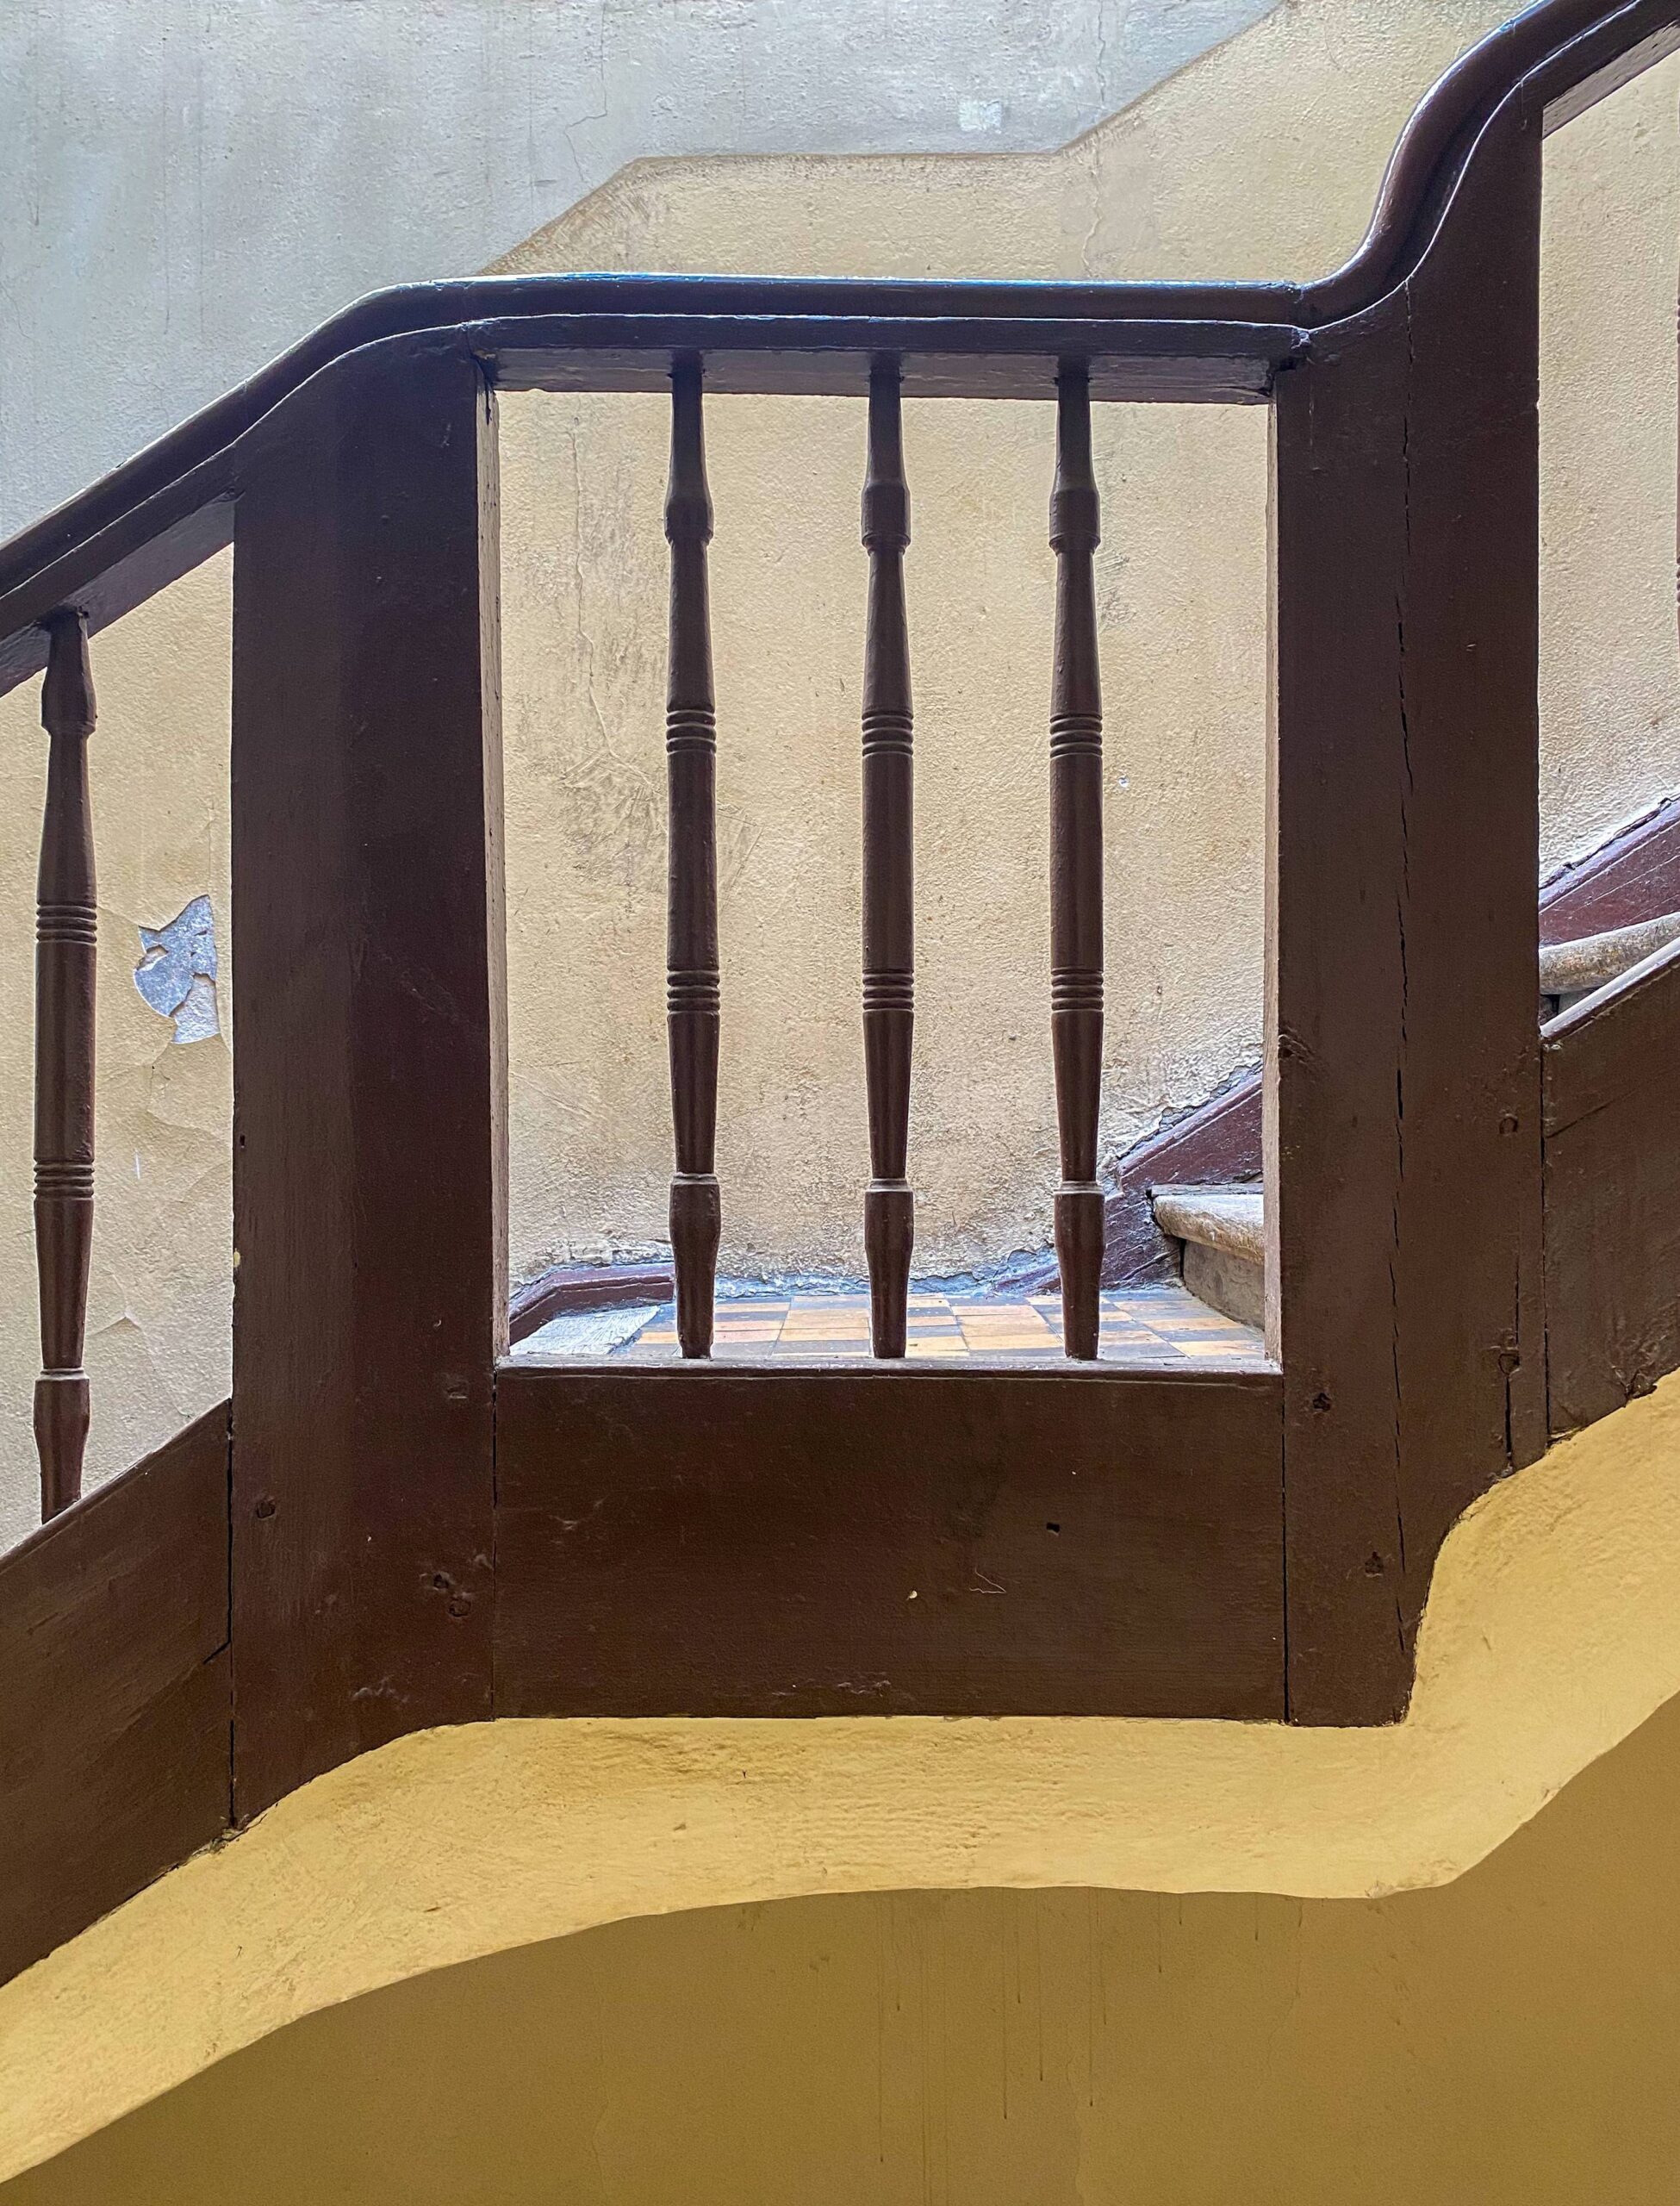 Drewniana balustrada schodów - klatka II. Fot. Wojciech Kmieć 2022 r., źródło: AOD III.